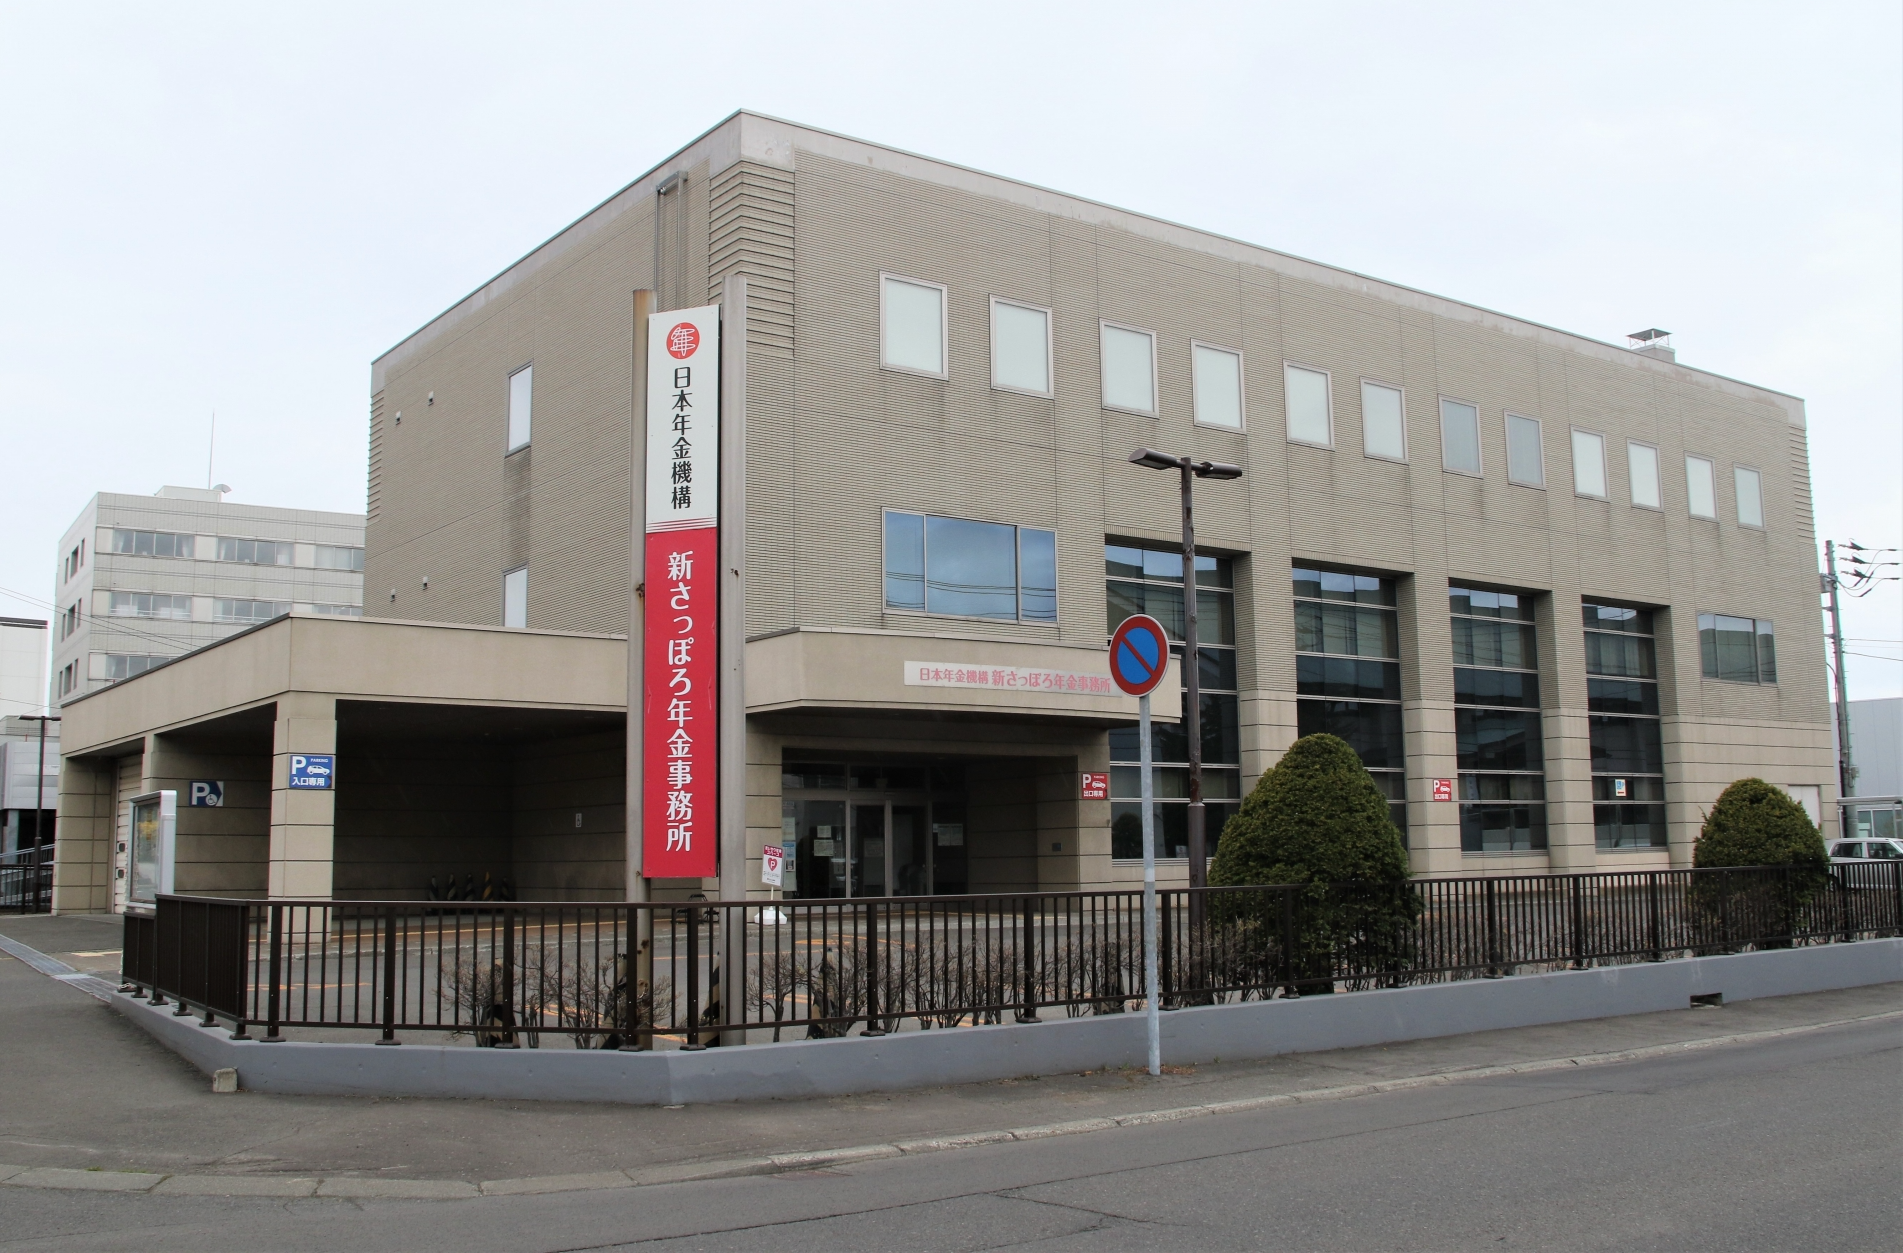 札幌市厚別区の新さっぽろ駅近くにある「新さっぽろ年金事務所」